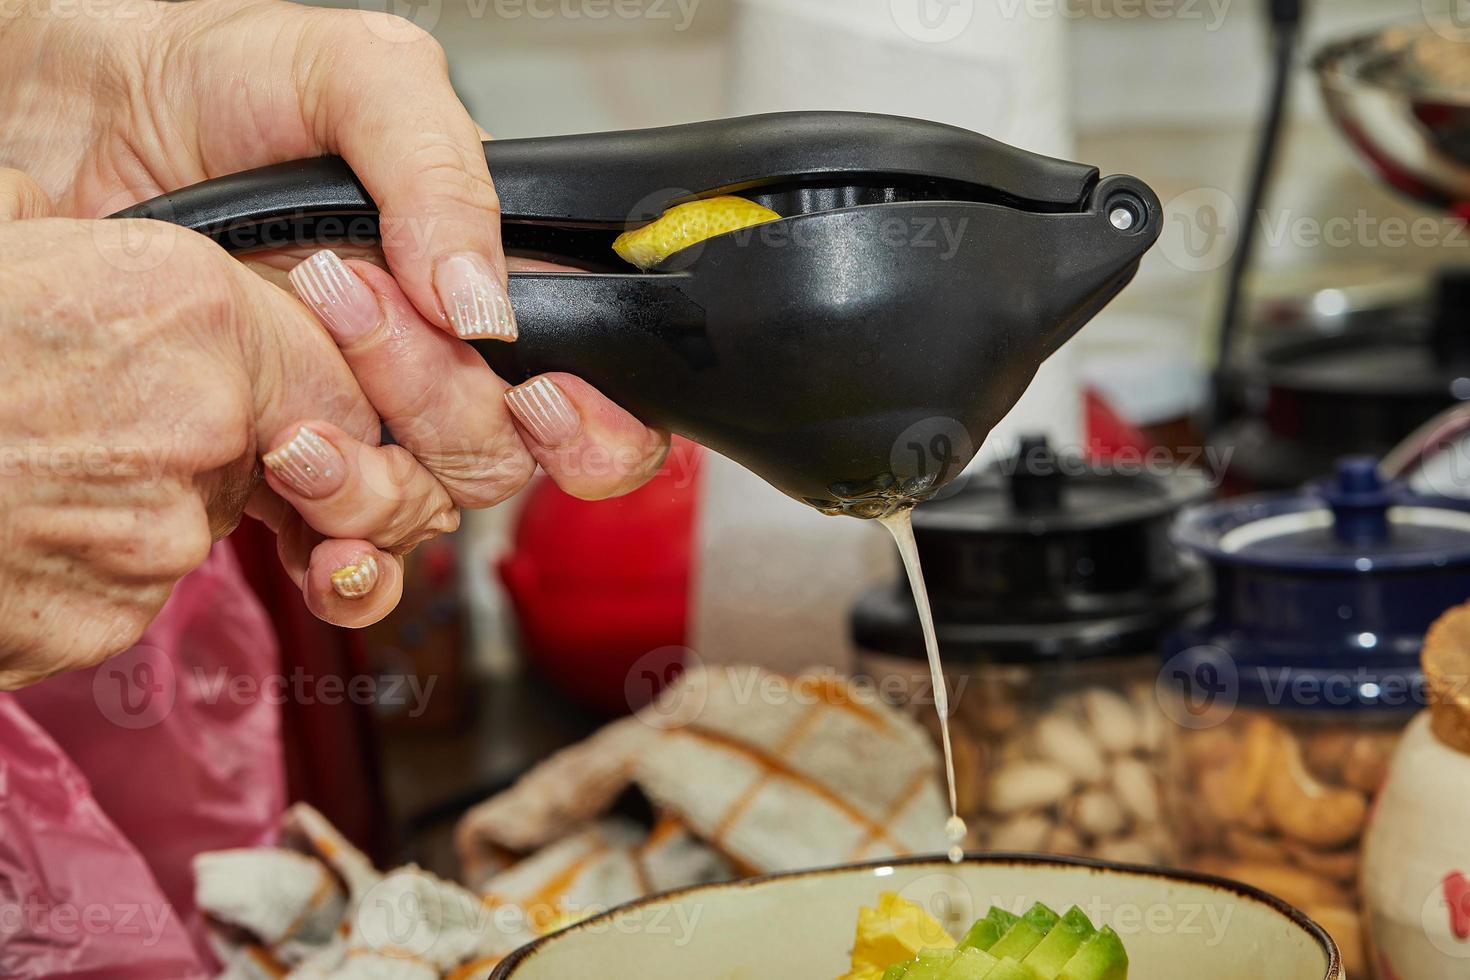 il cuoco spreme il succo di limone nell'insalata usando un dispositivo speciale per preparare l'insalata foto